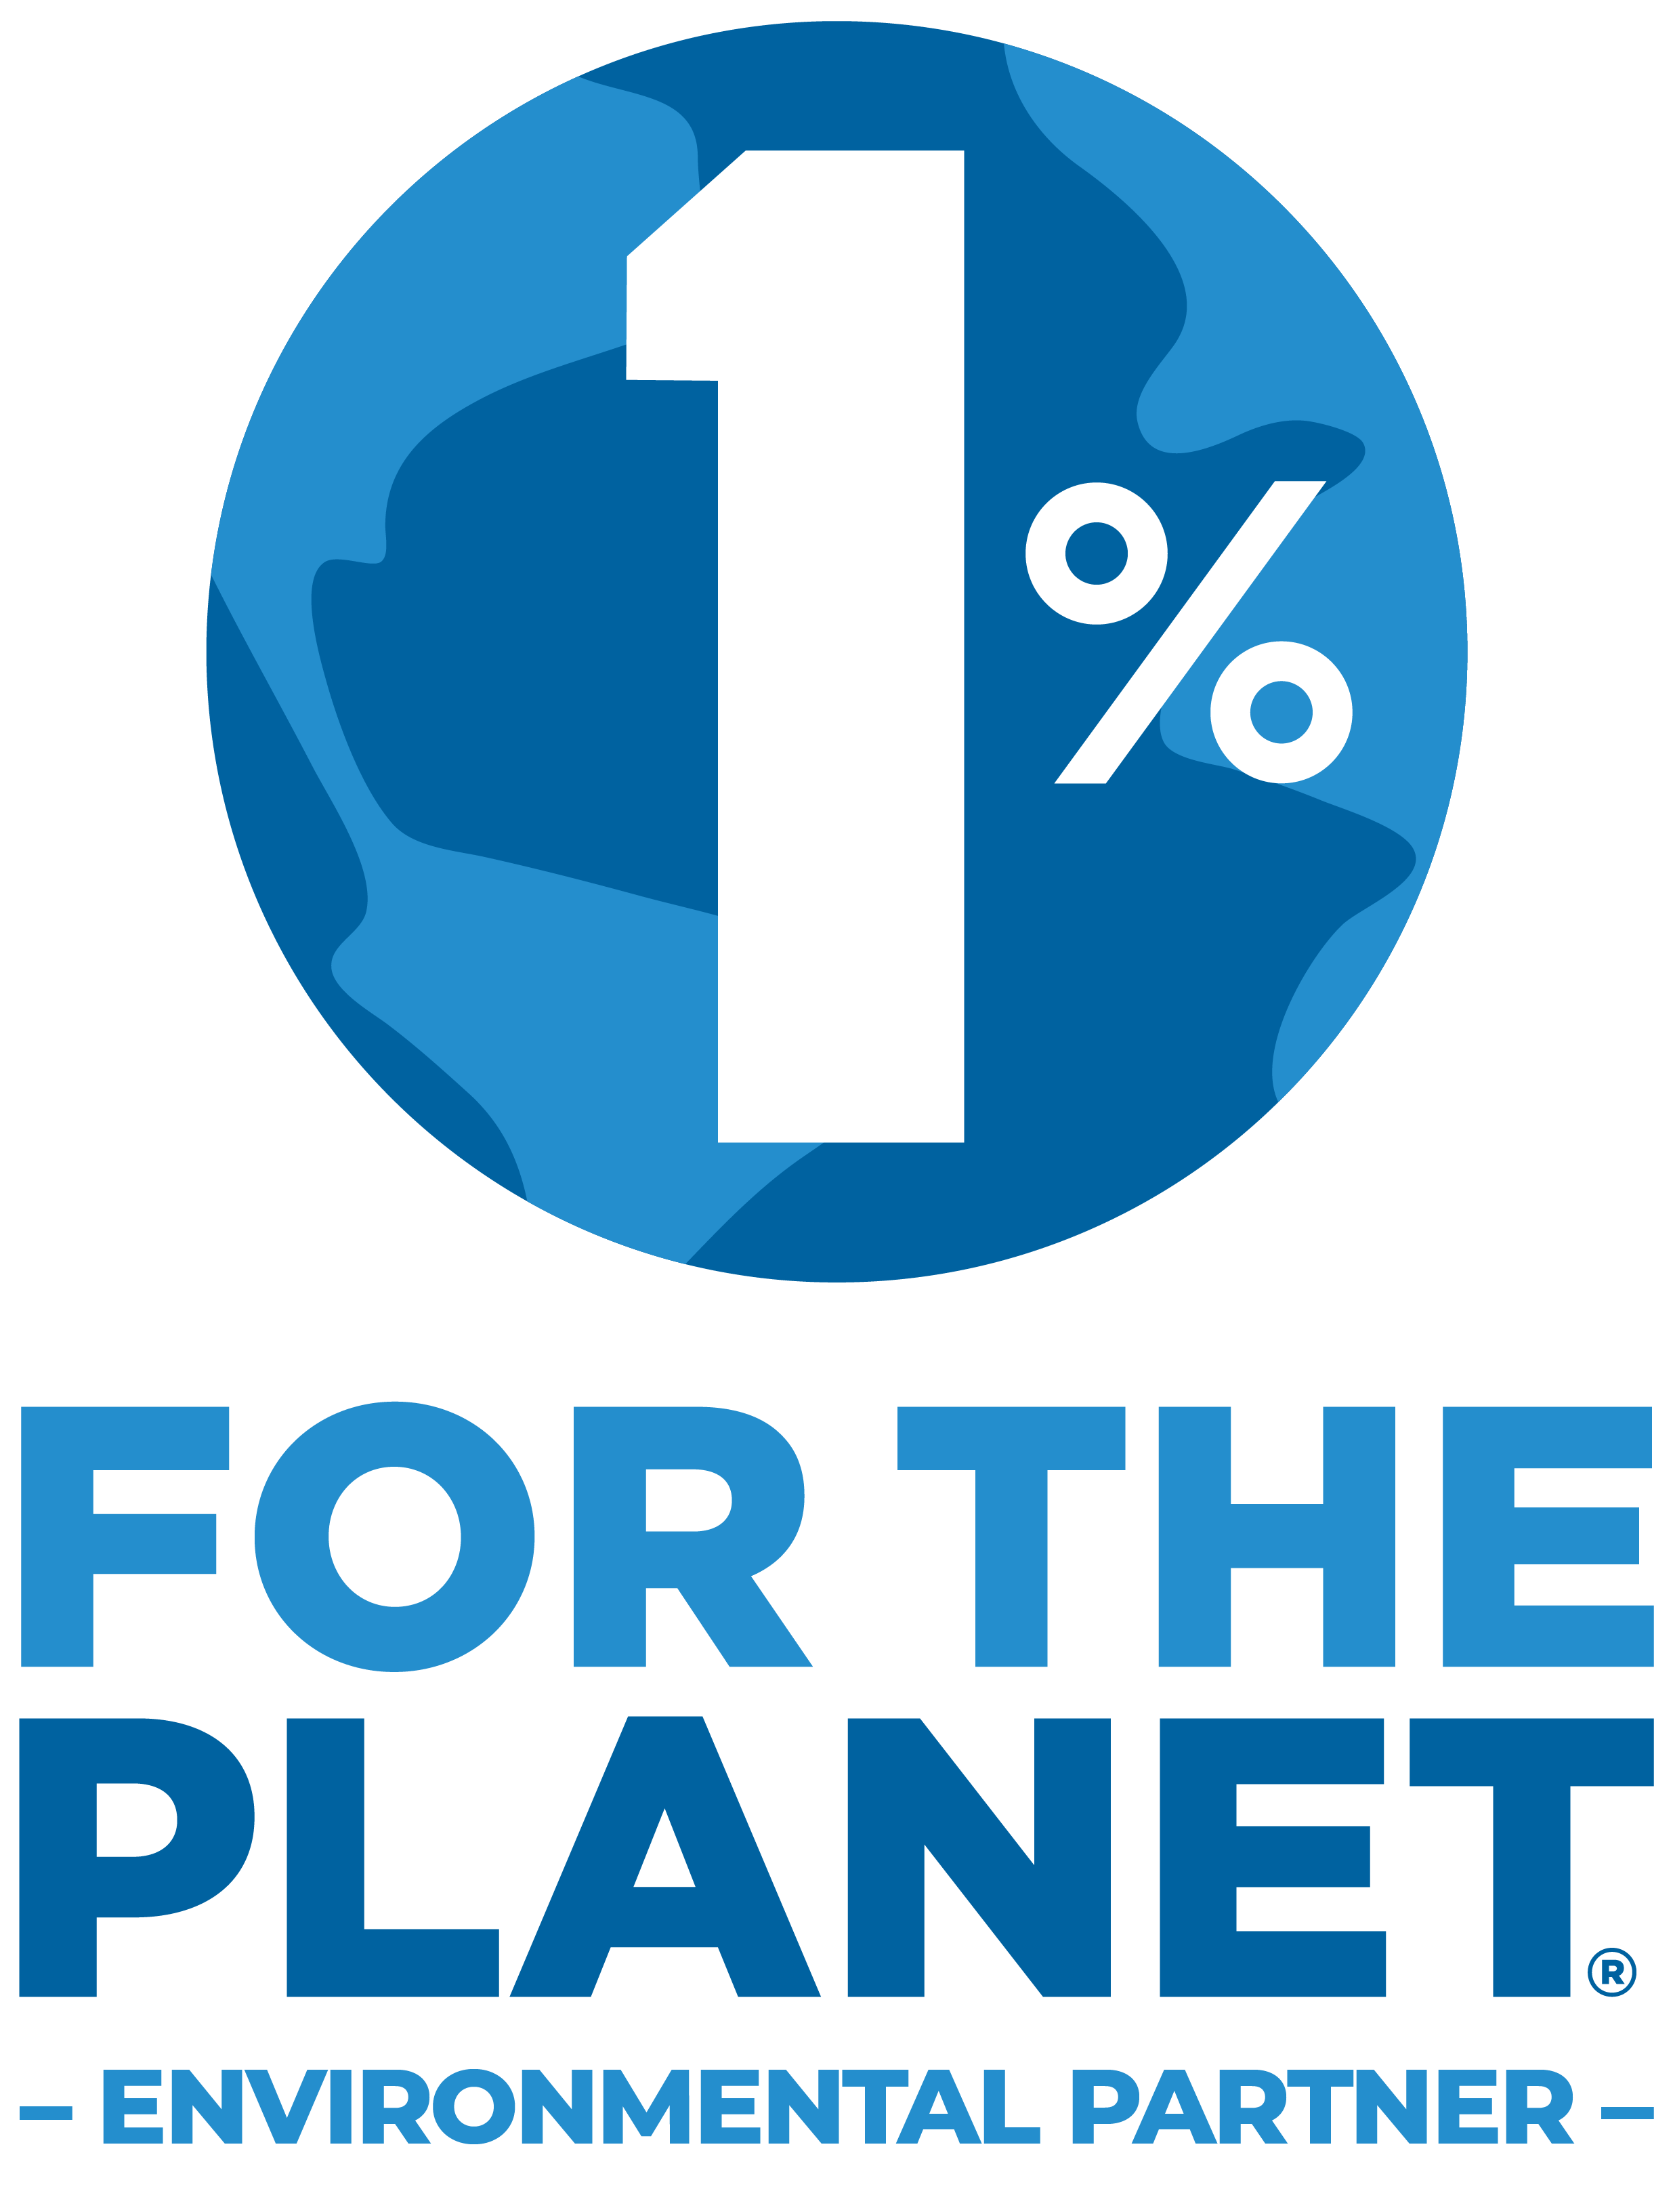 1% for the planet environmental partner